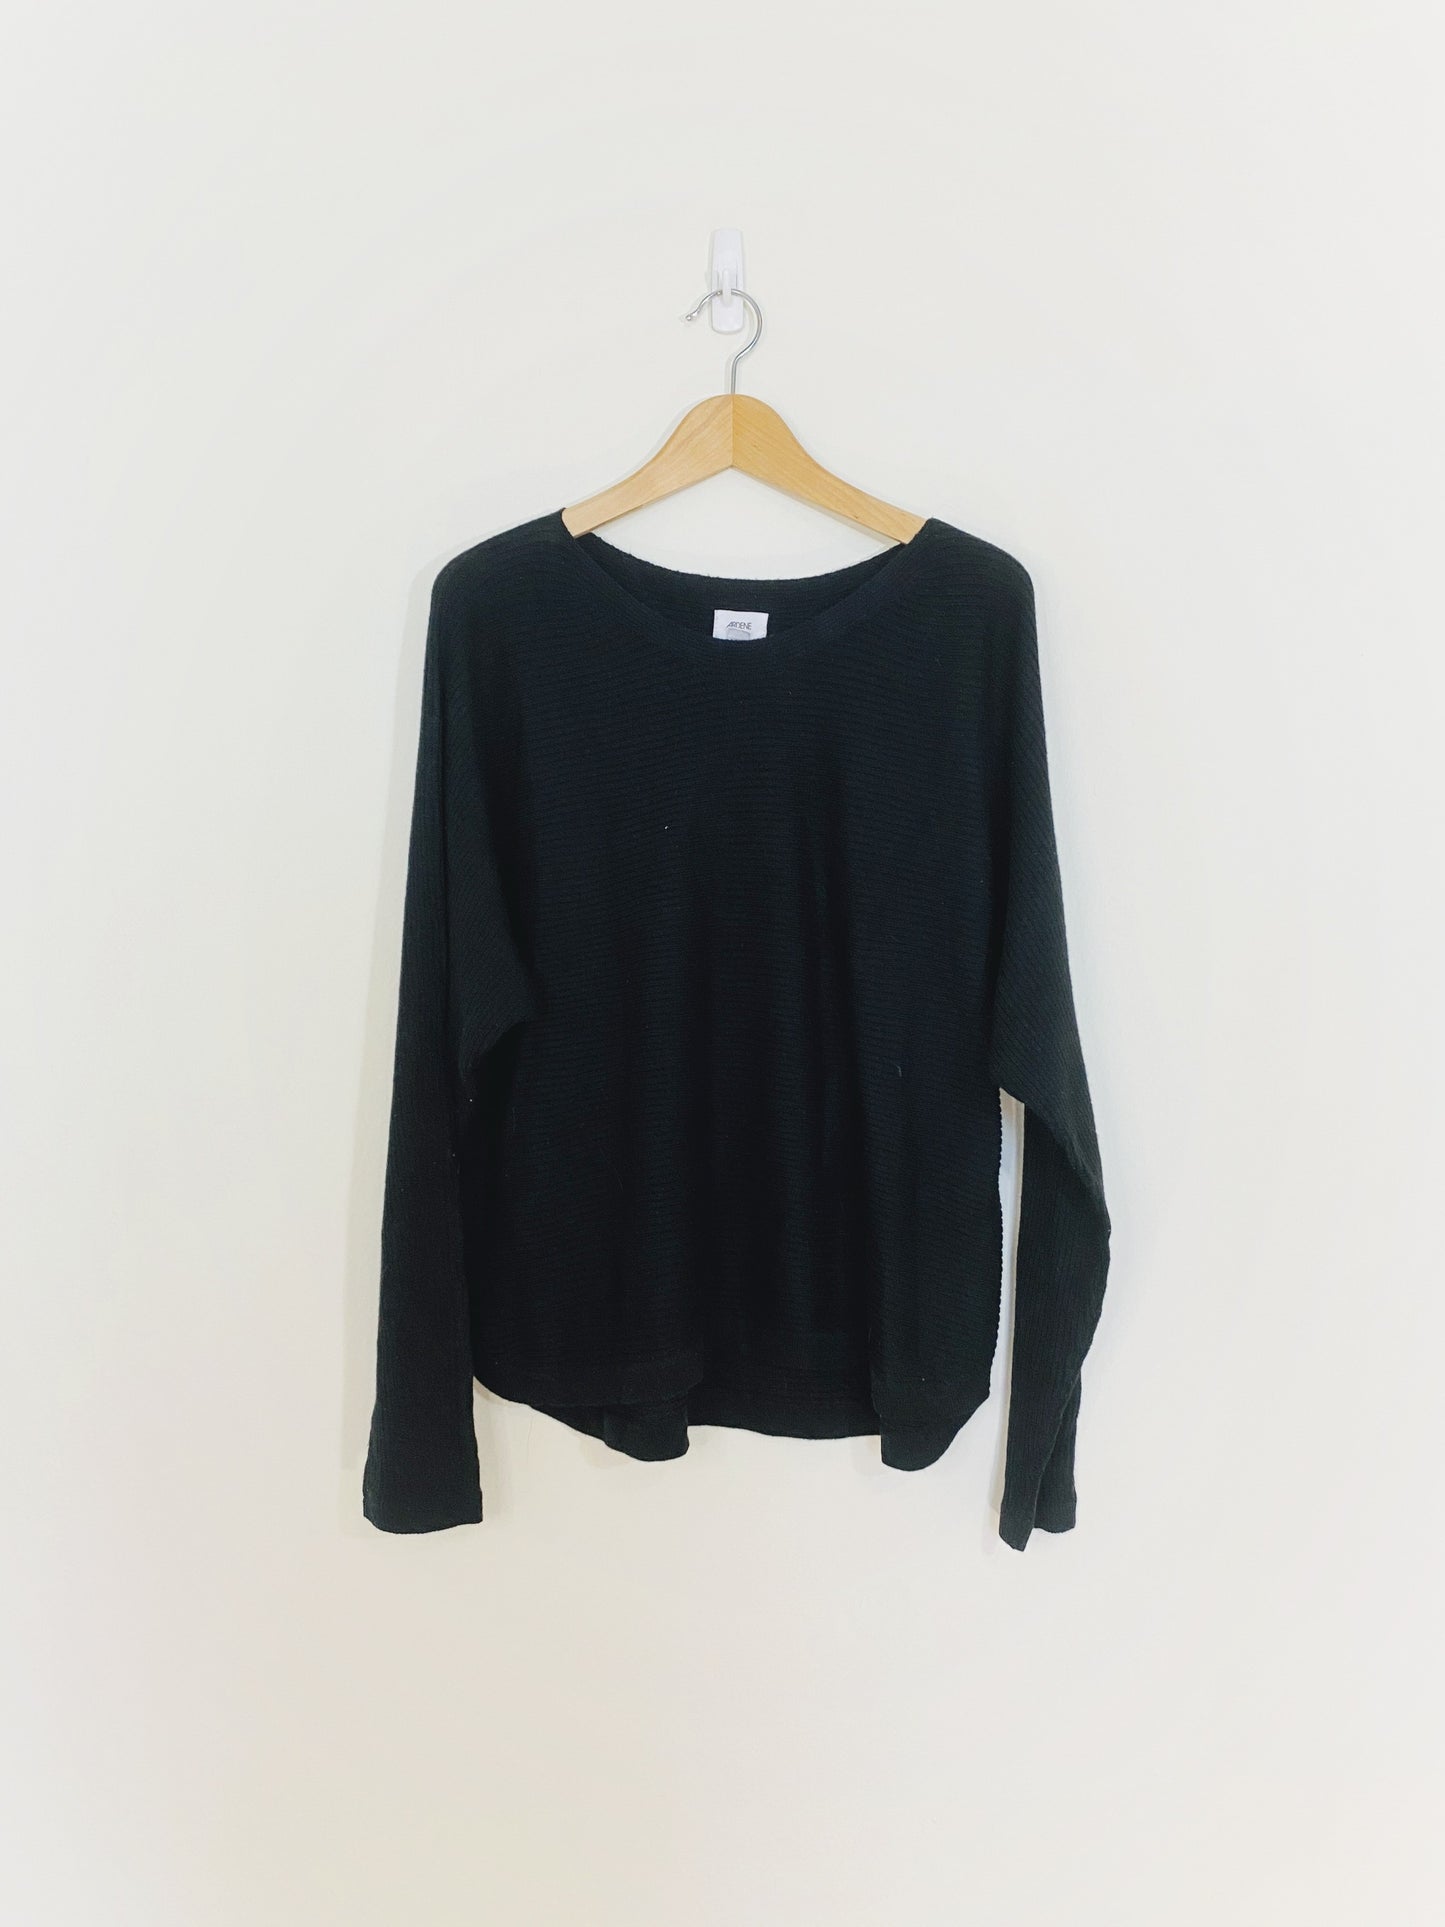 Black Knit Sweater (XL)